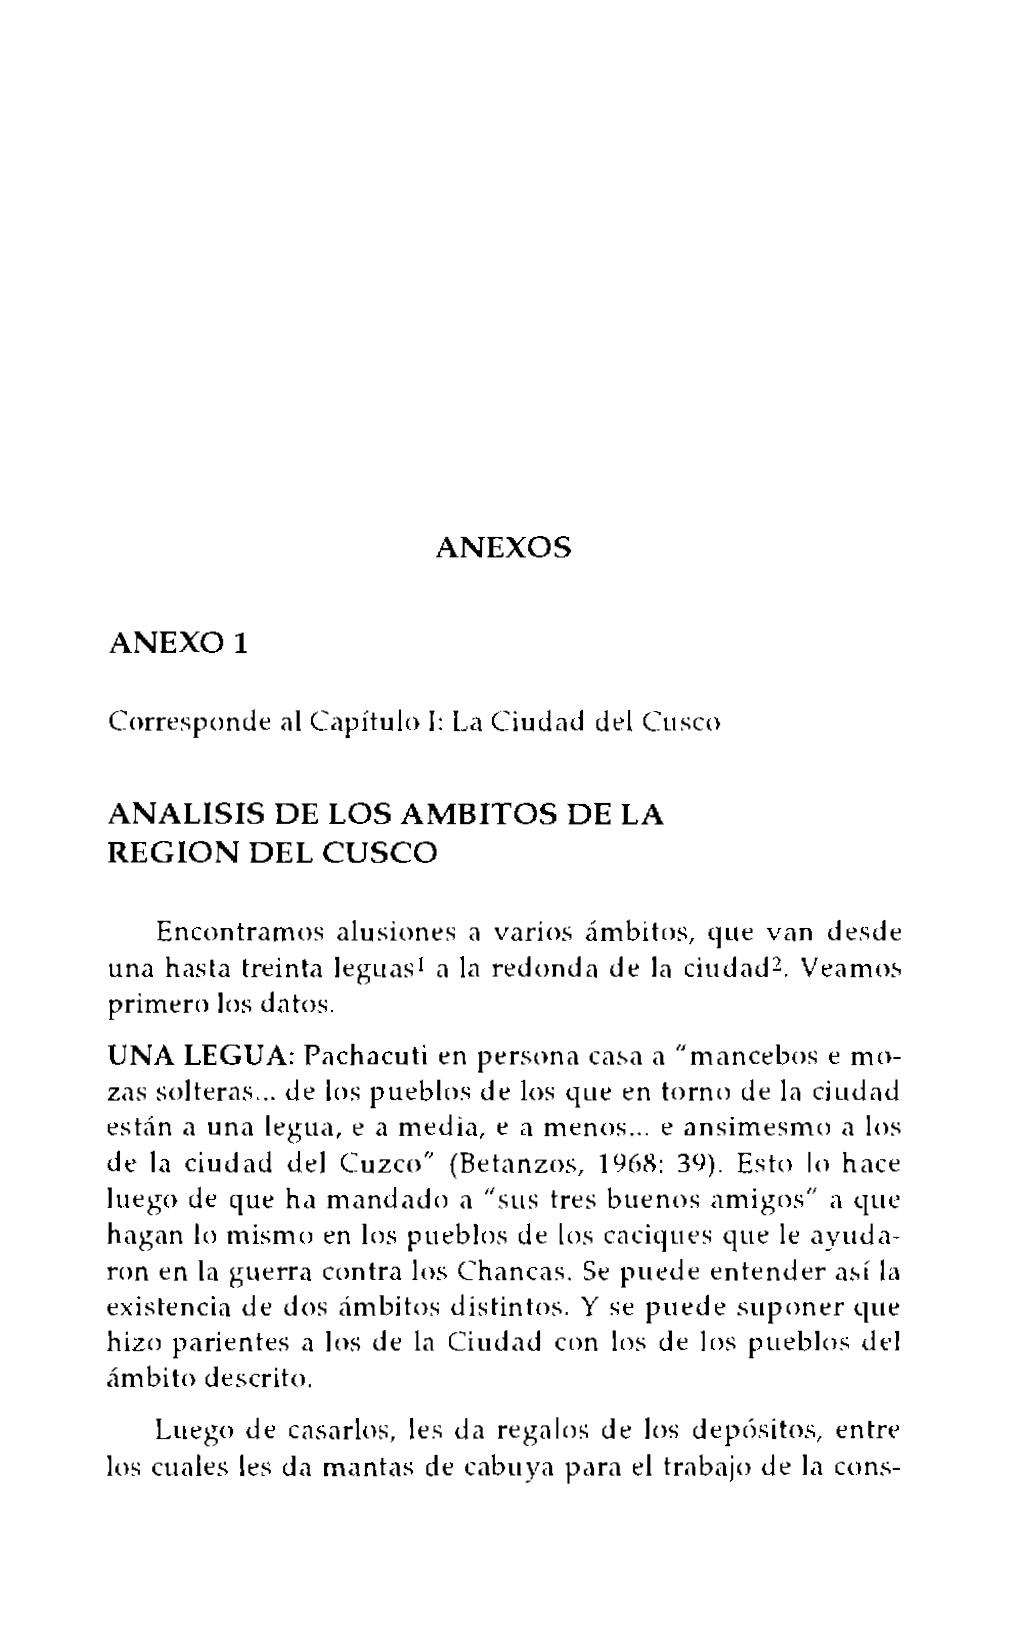 ANEXOS ANEXO 1 ANALISIS DE LOS AMBITOS DE LA Reglan DEL Cusca